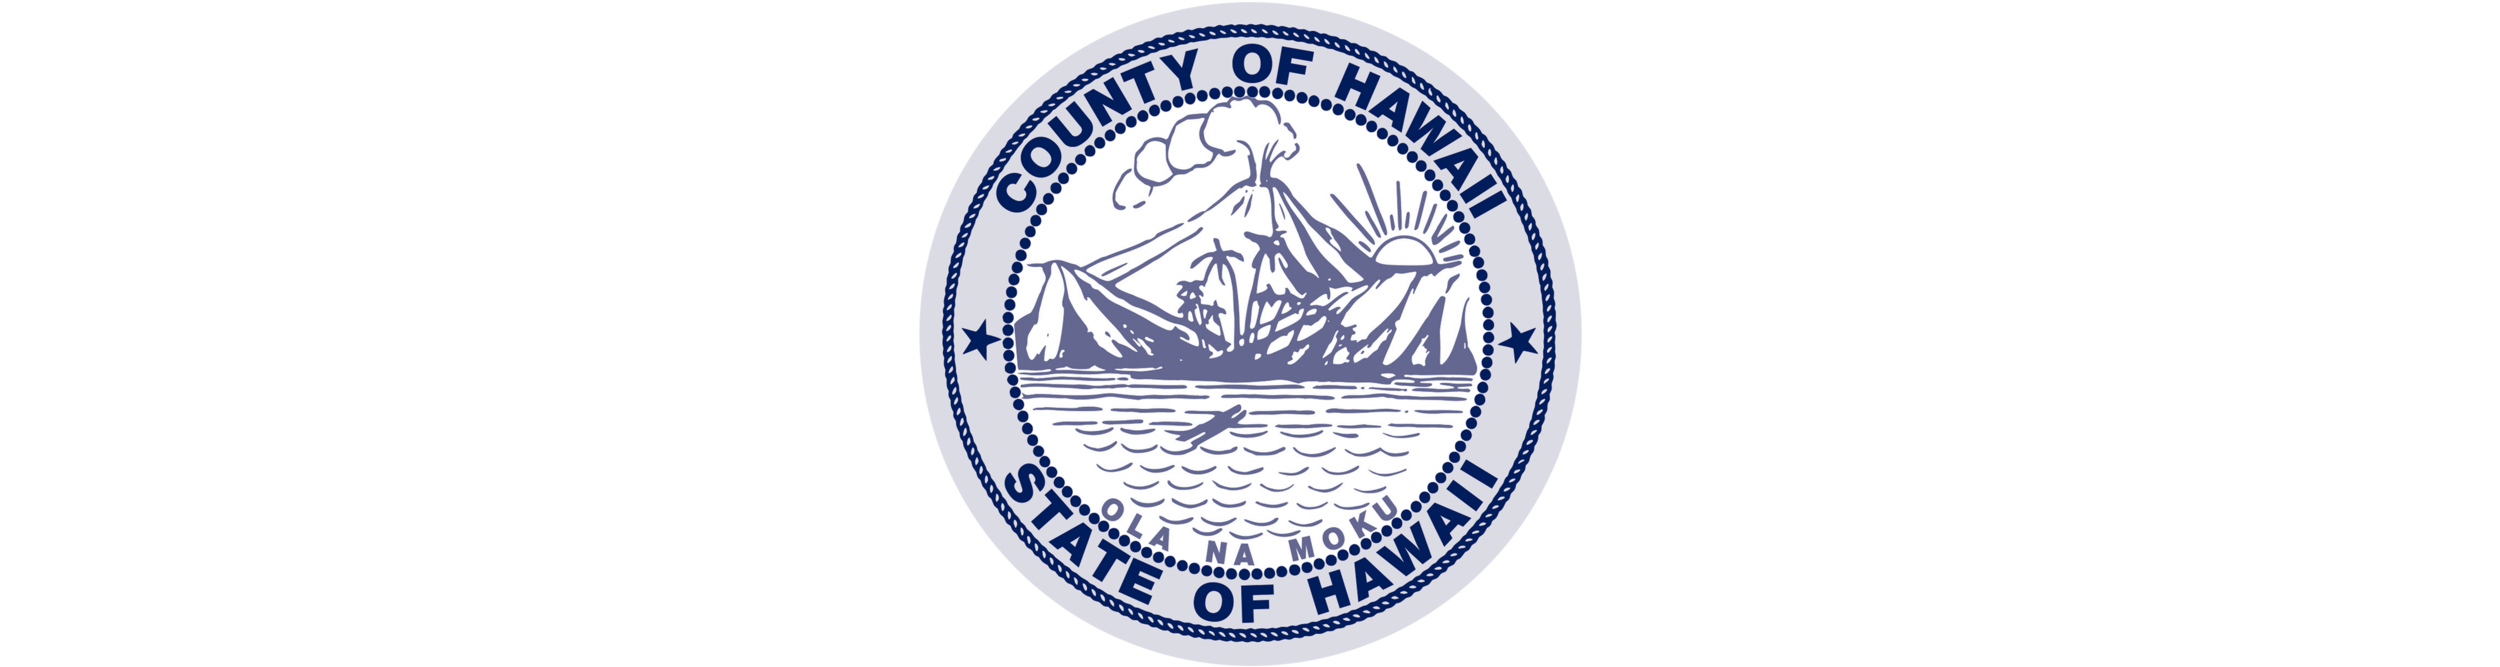 HPHA-waiwai-logo-Hawaii-County.png